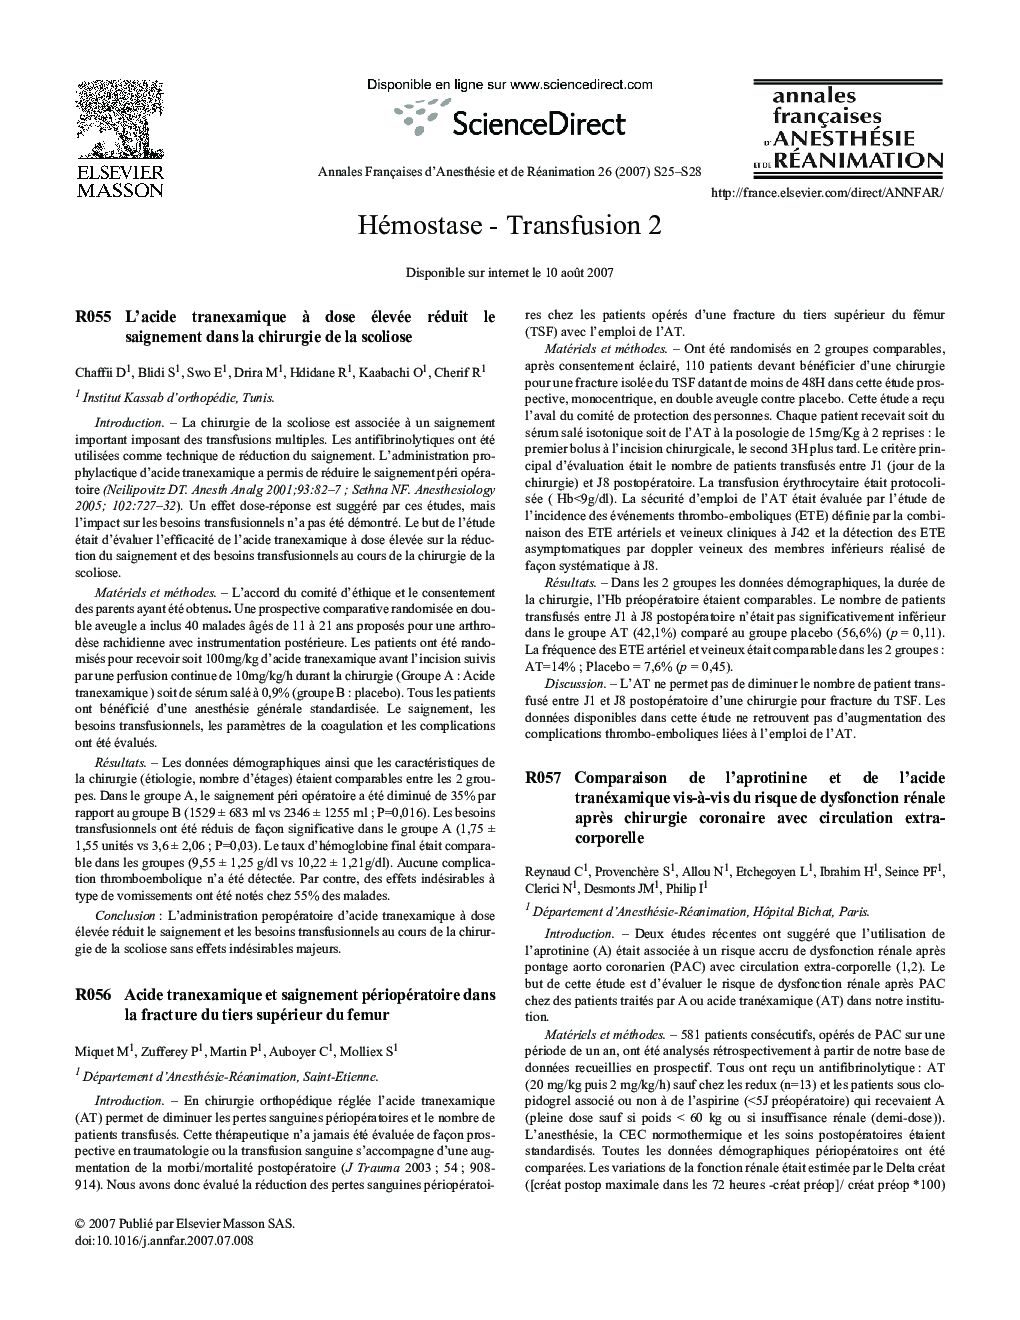 Hémostase - Transfusion 2